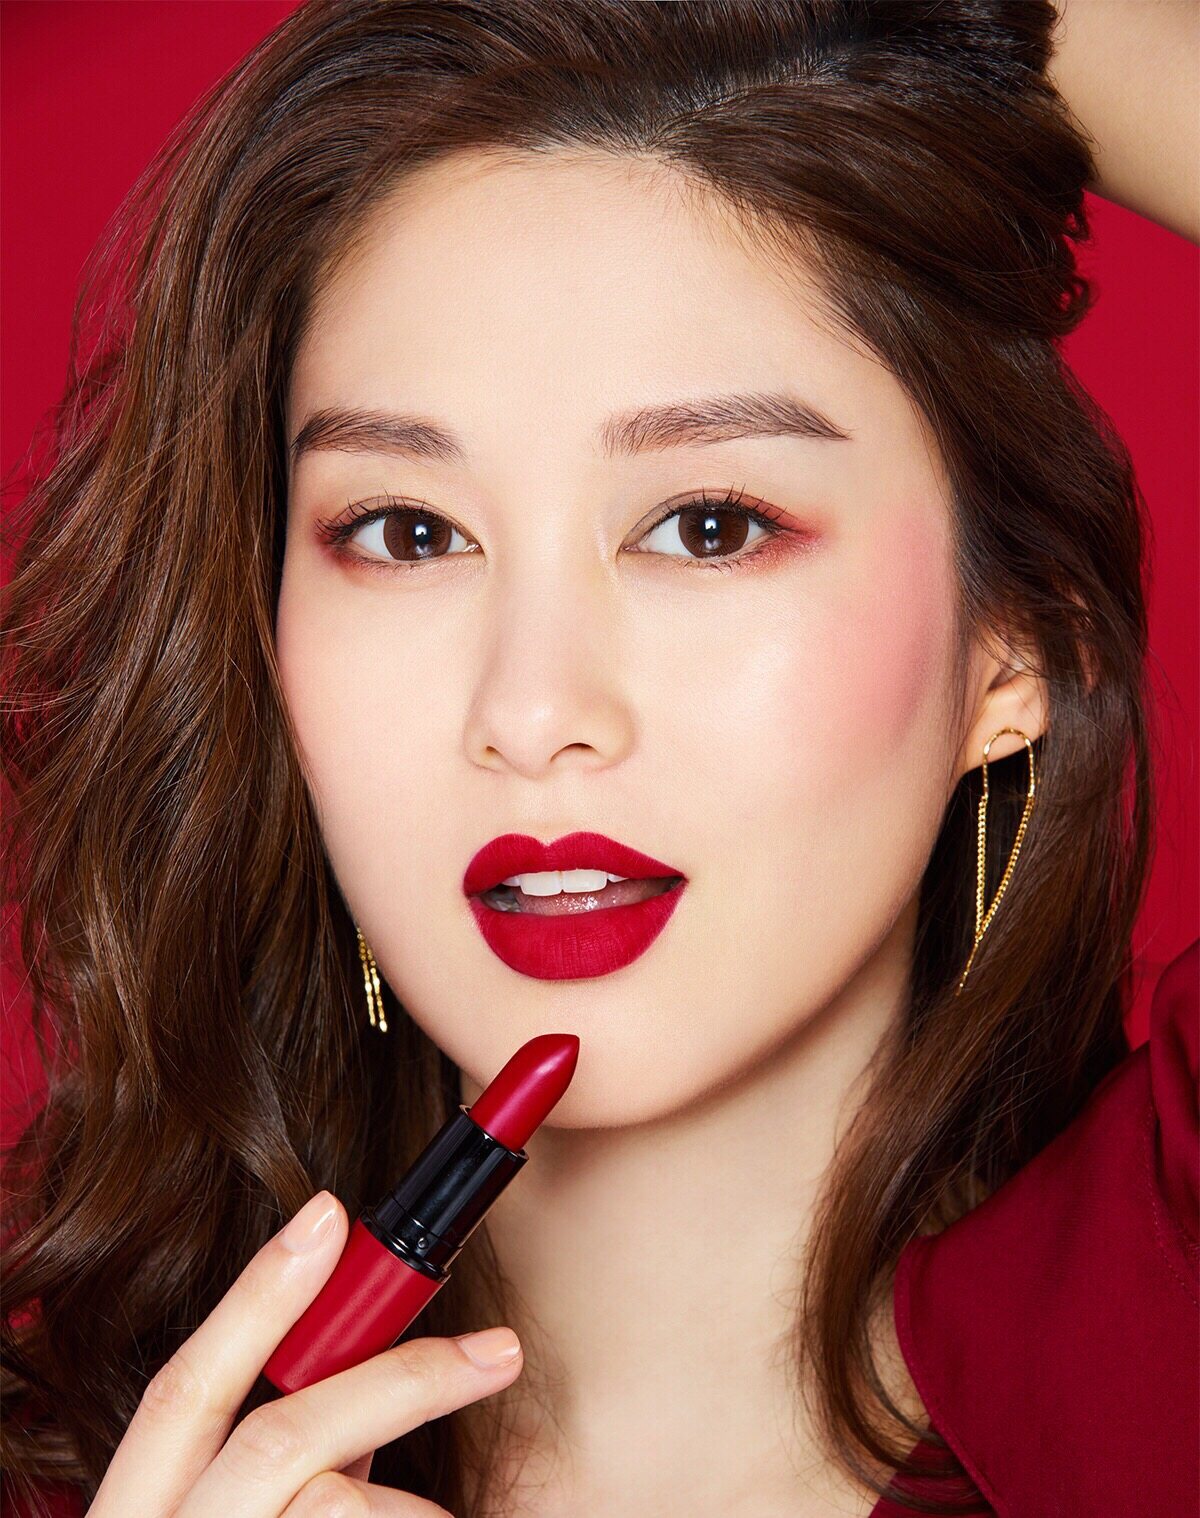 大紅色調向來極適合亞洲女生的膚色，既矚目又顯白。香香的妝容以紅唇